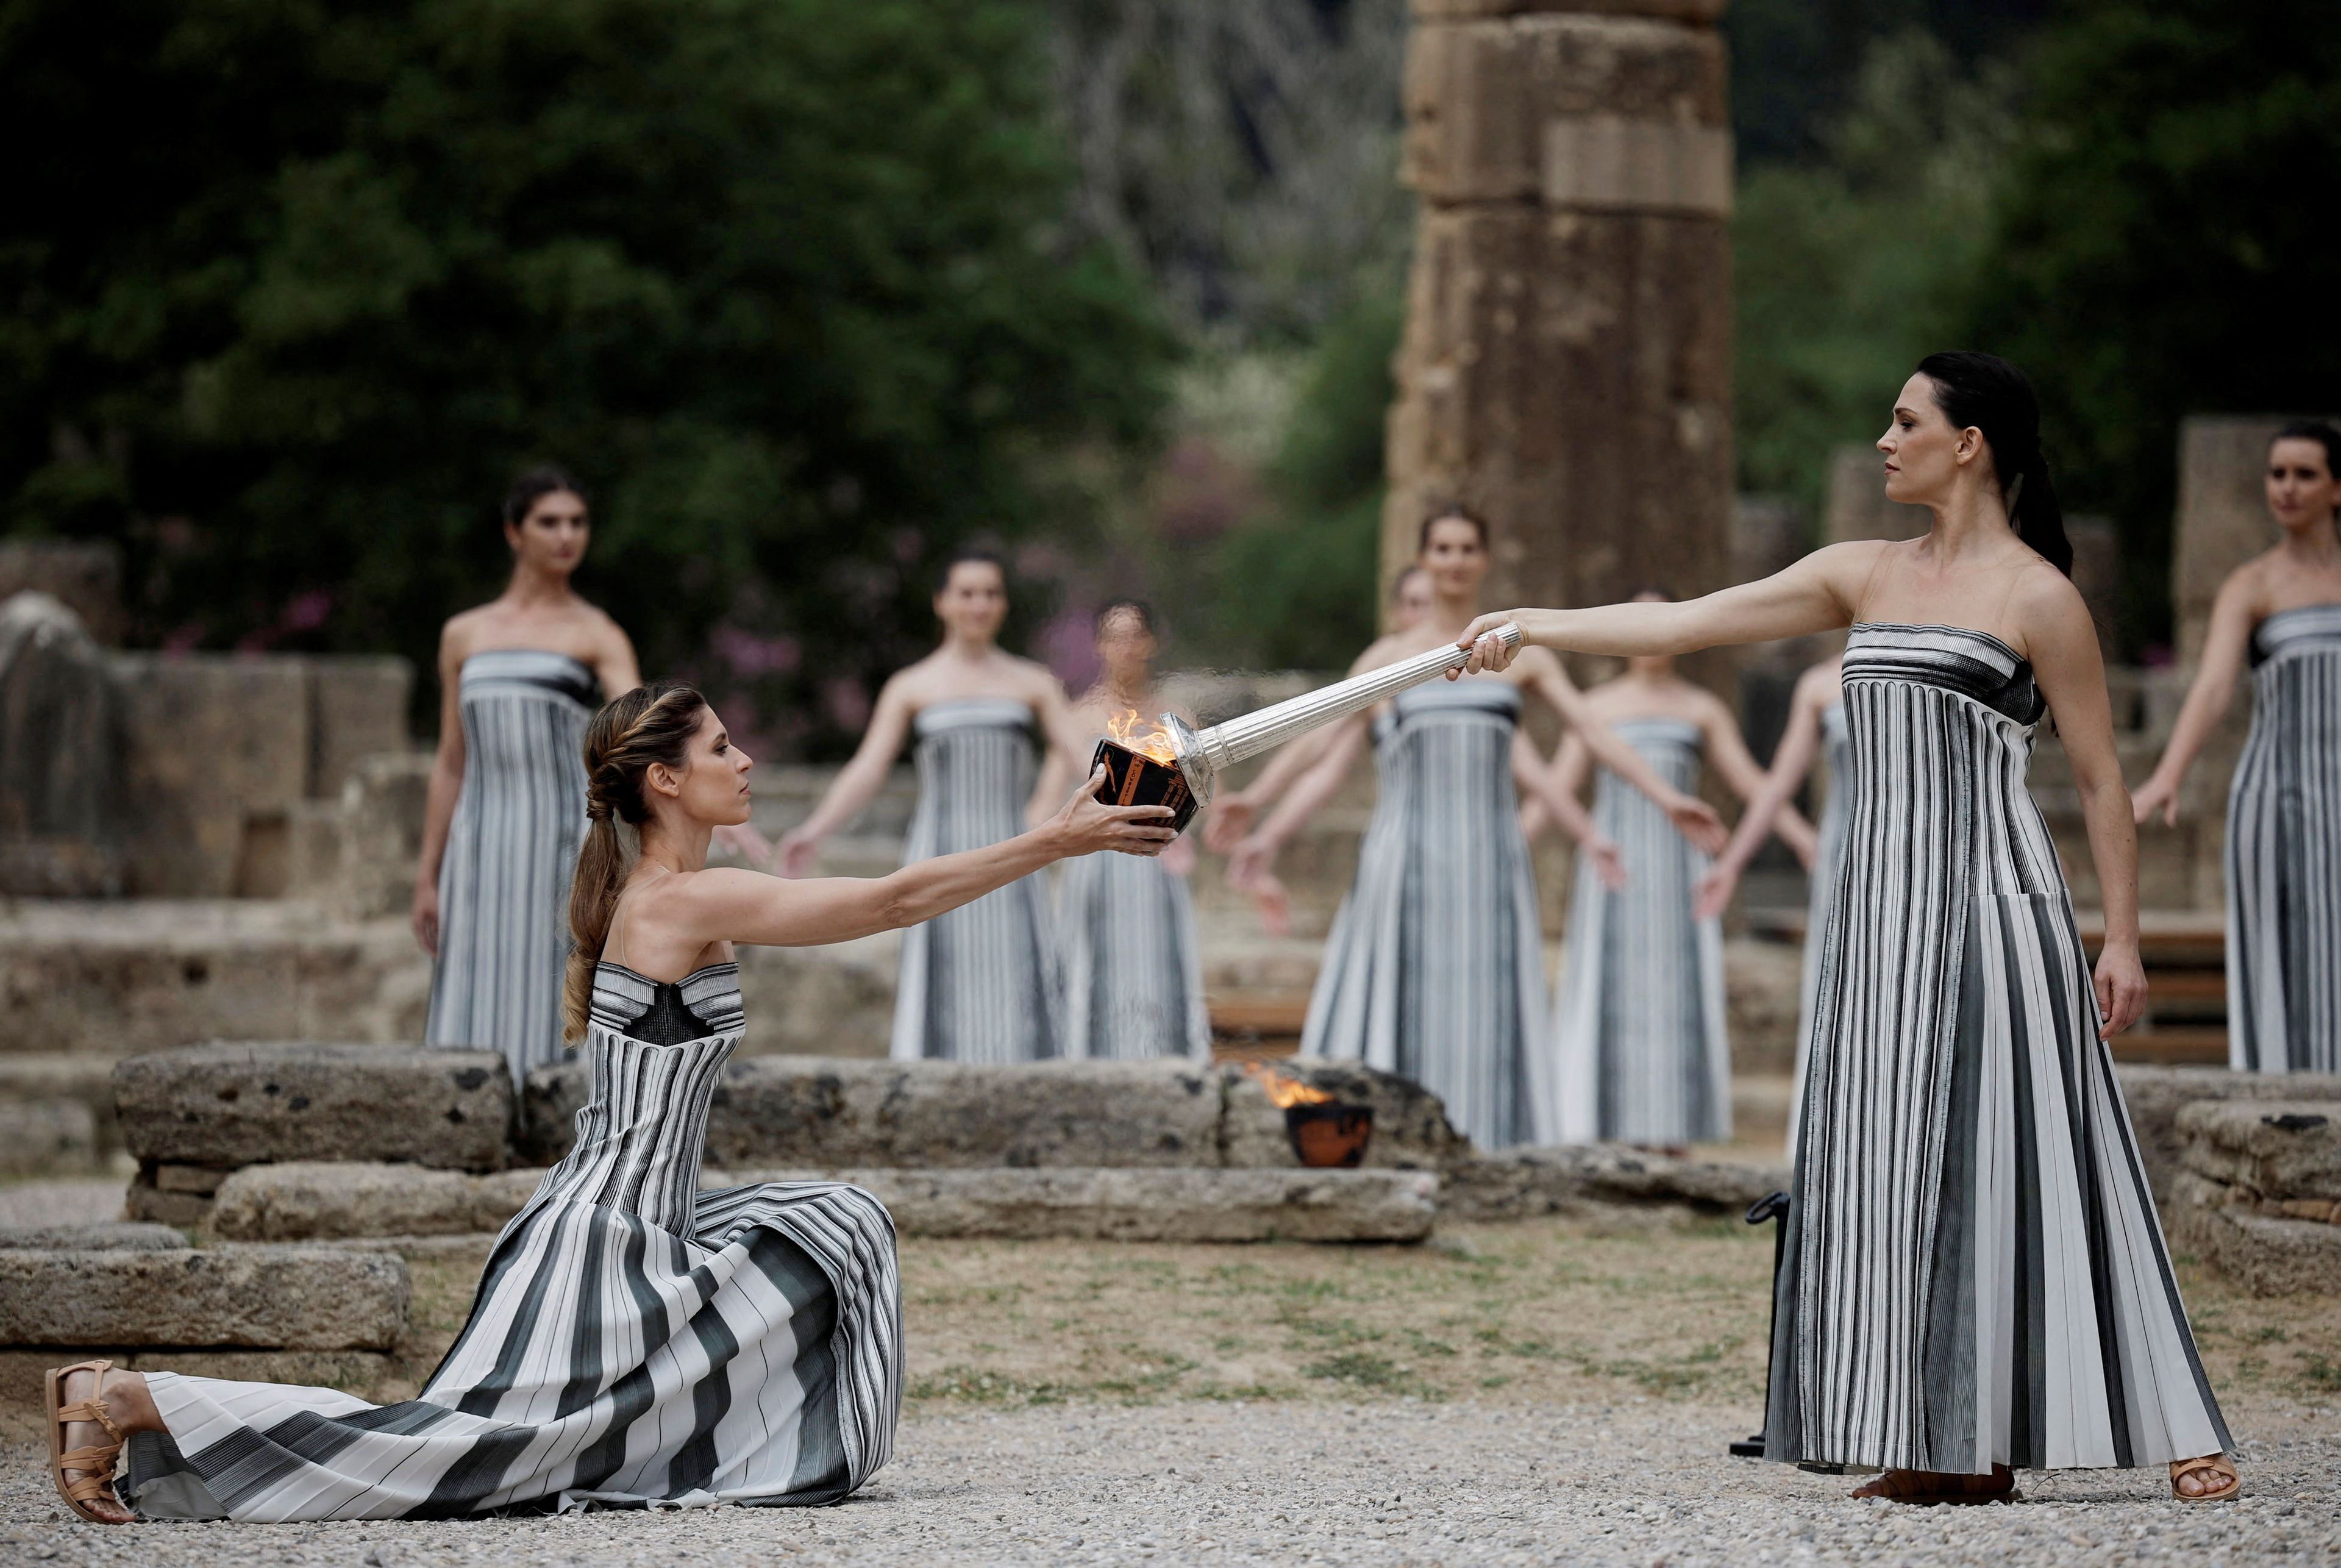 La foto del día: La llama olímpica se encendió ayer entre las ruinas del Templo de Hera, de más de 2.600 años de antigüedad, cuna griega de los Juegos. Comienza así un relevo de 5.000 kilómetros que finalizará en París en julio.